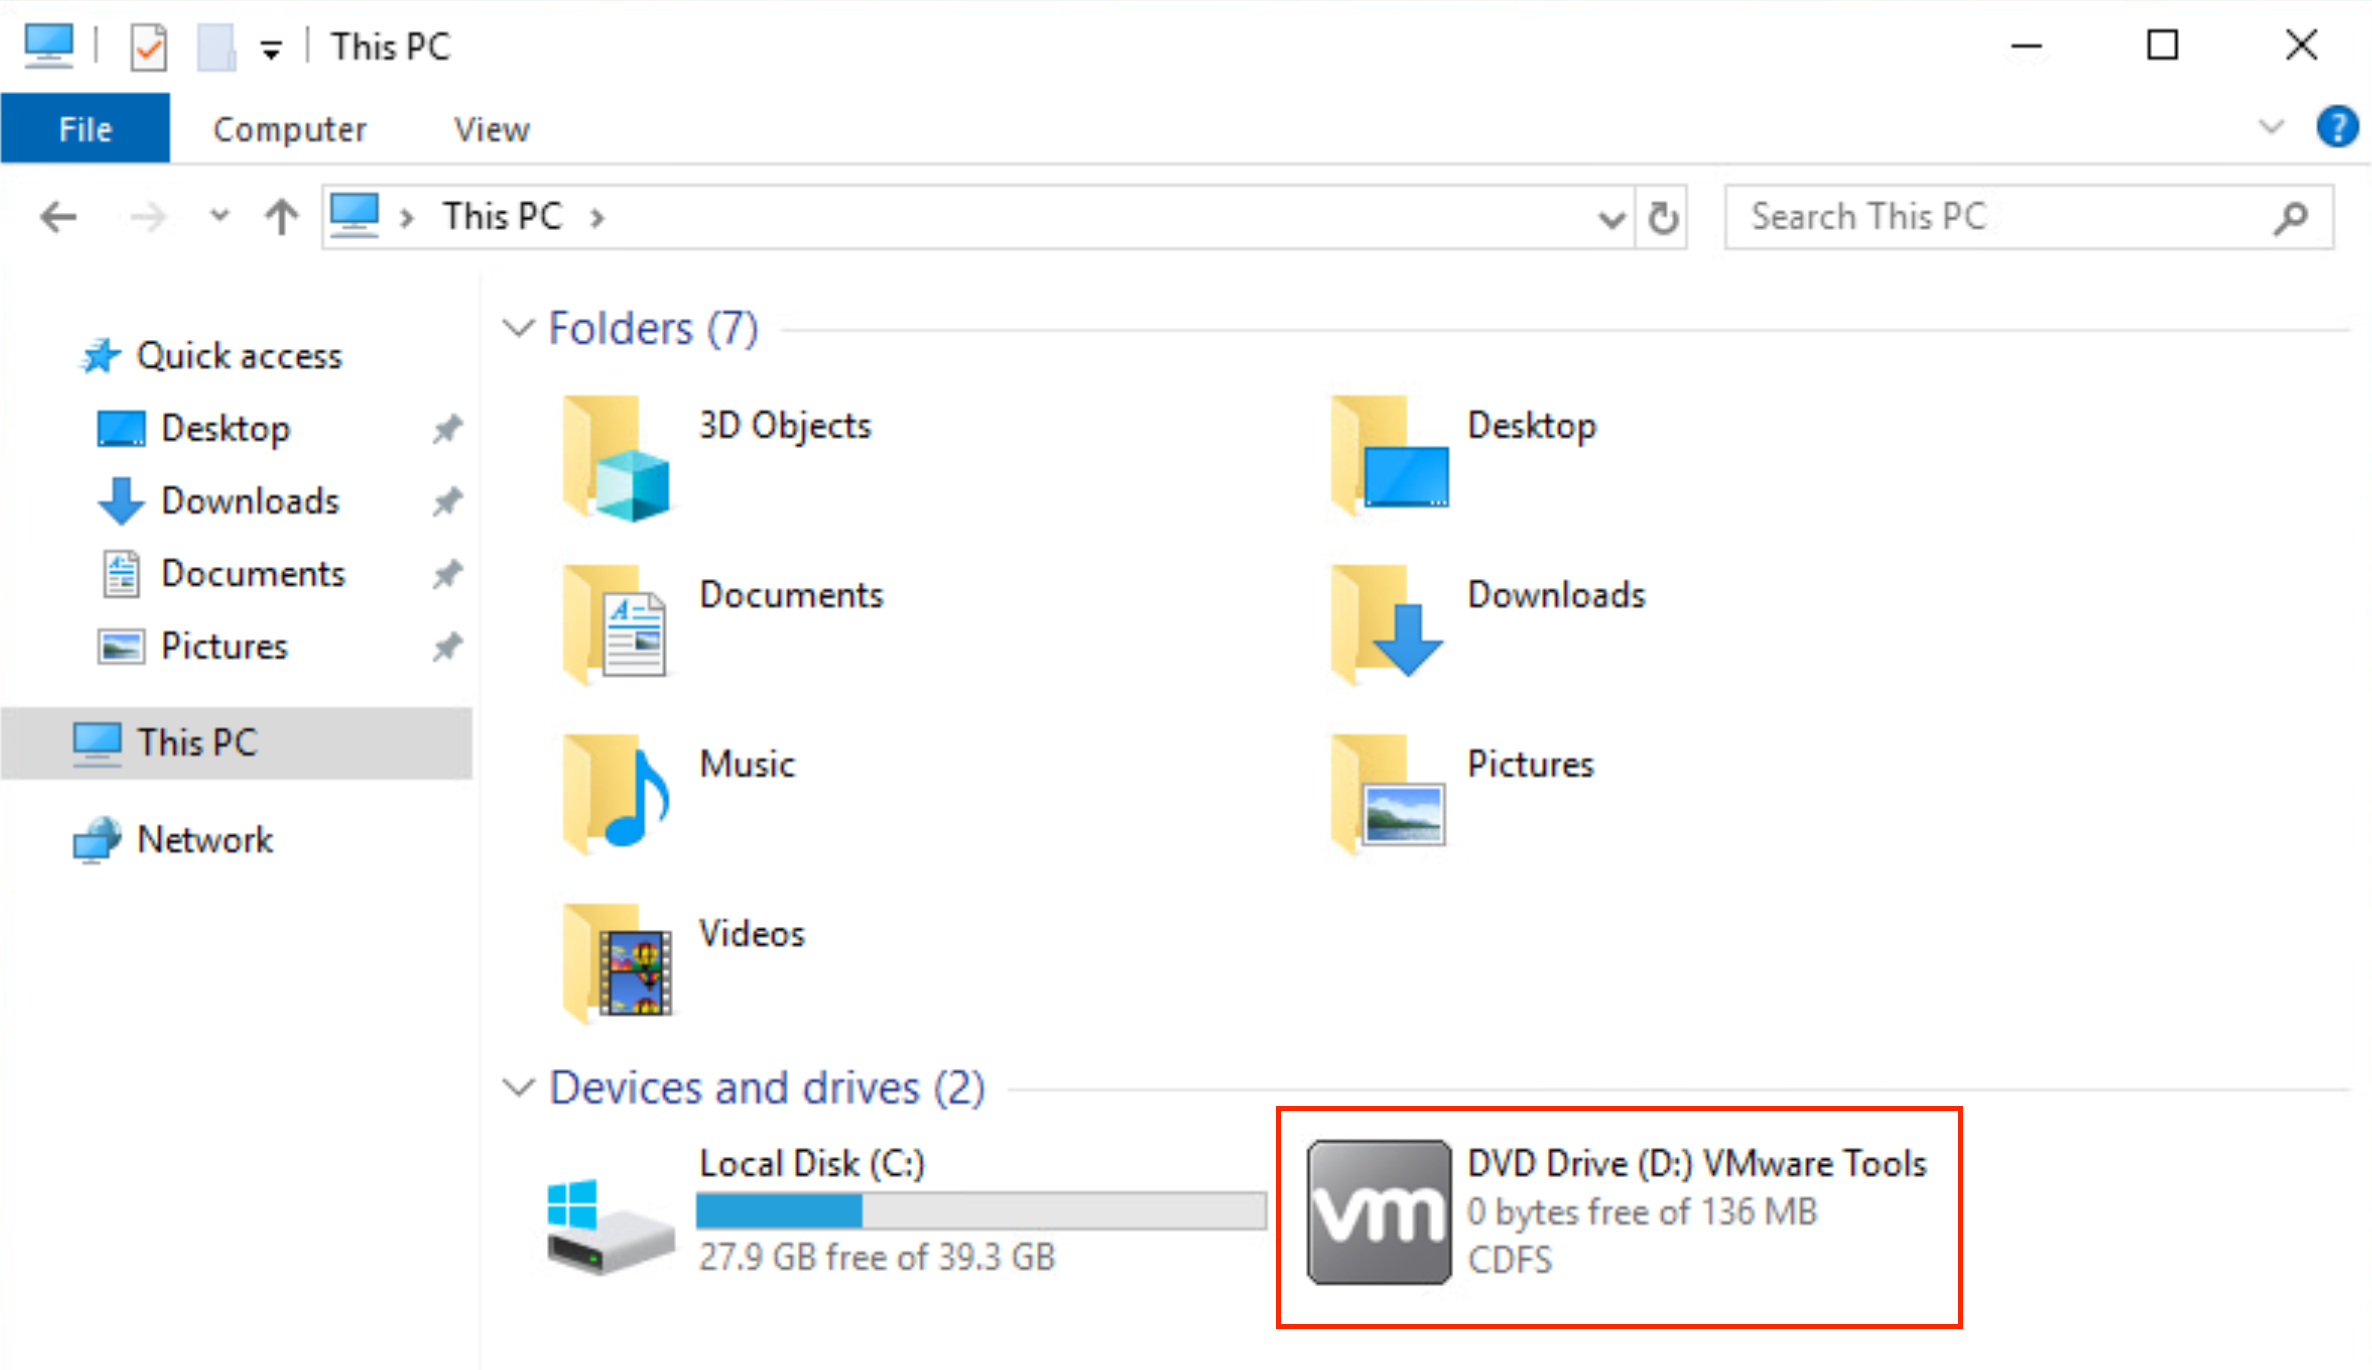 Screenshot of VMware Tools DVD Drive in the Windows Explorer window.